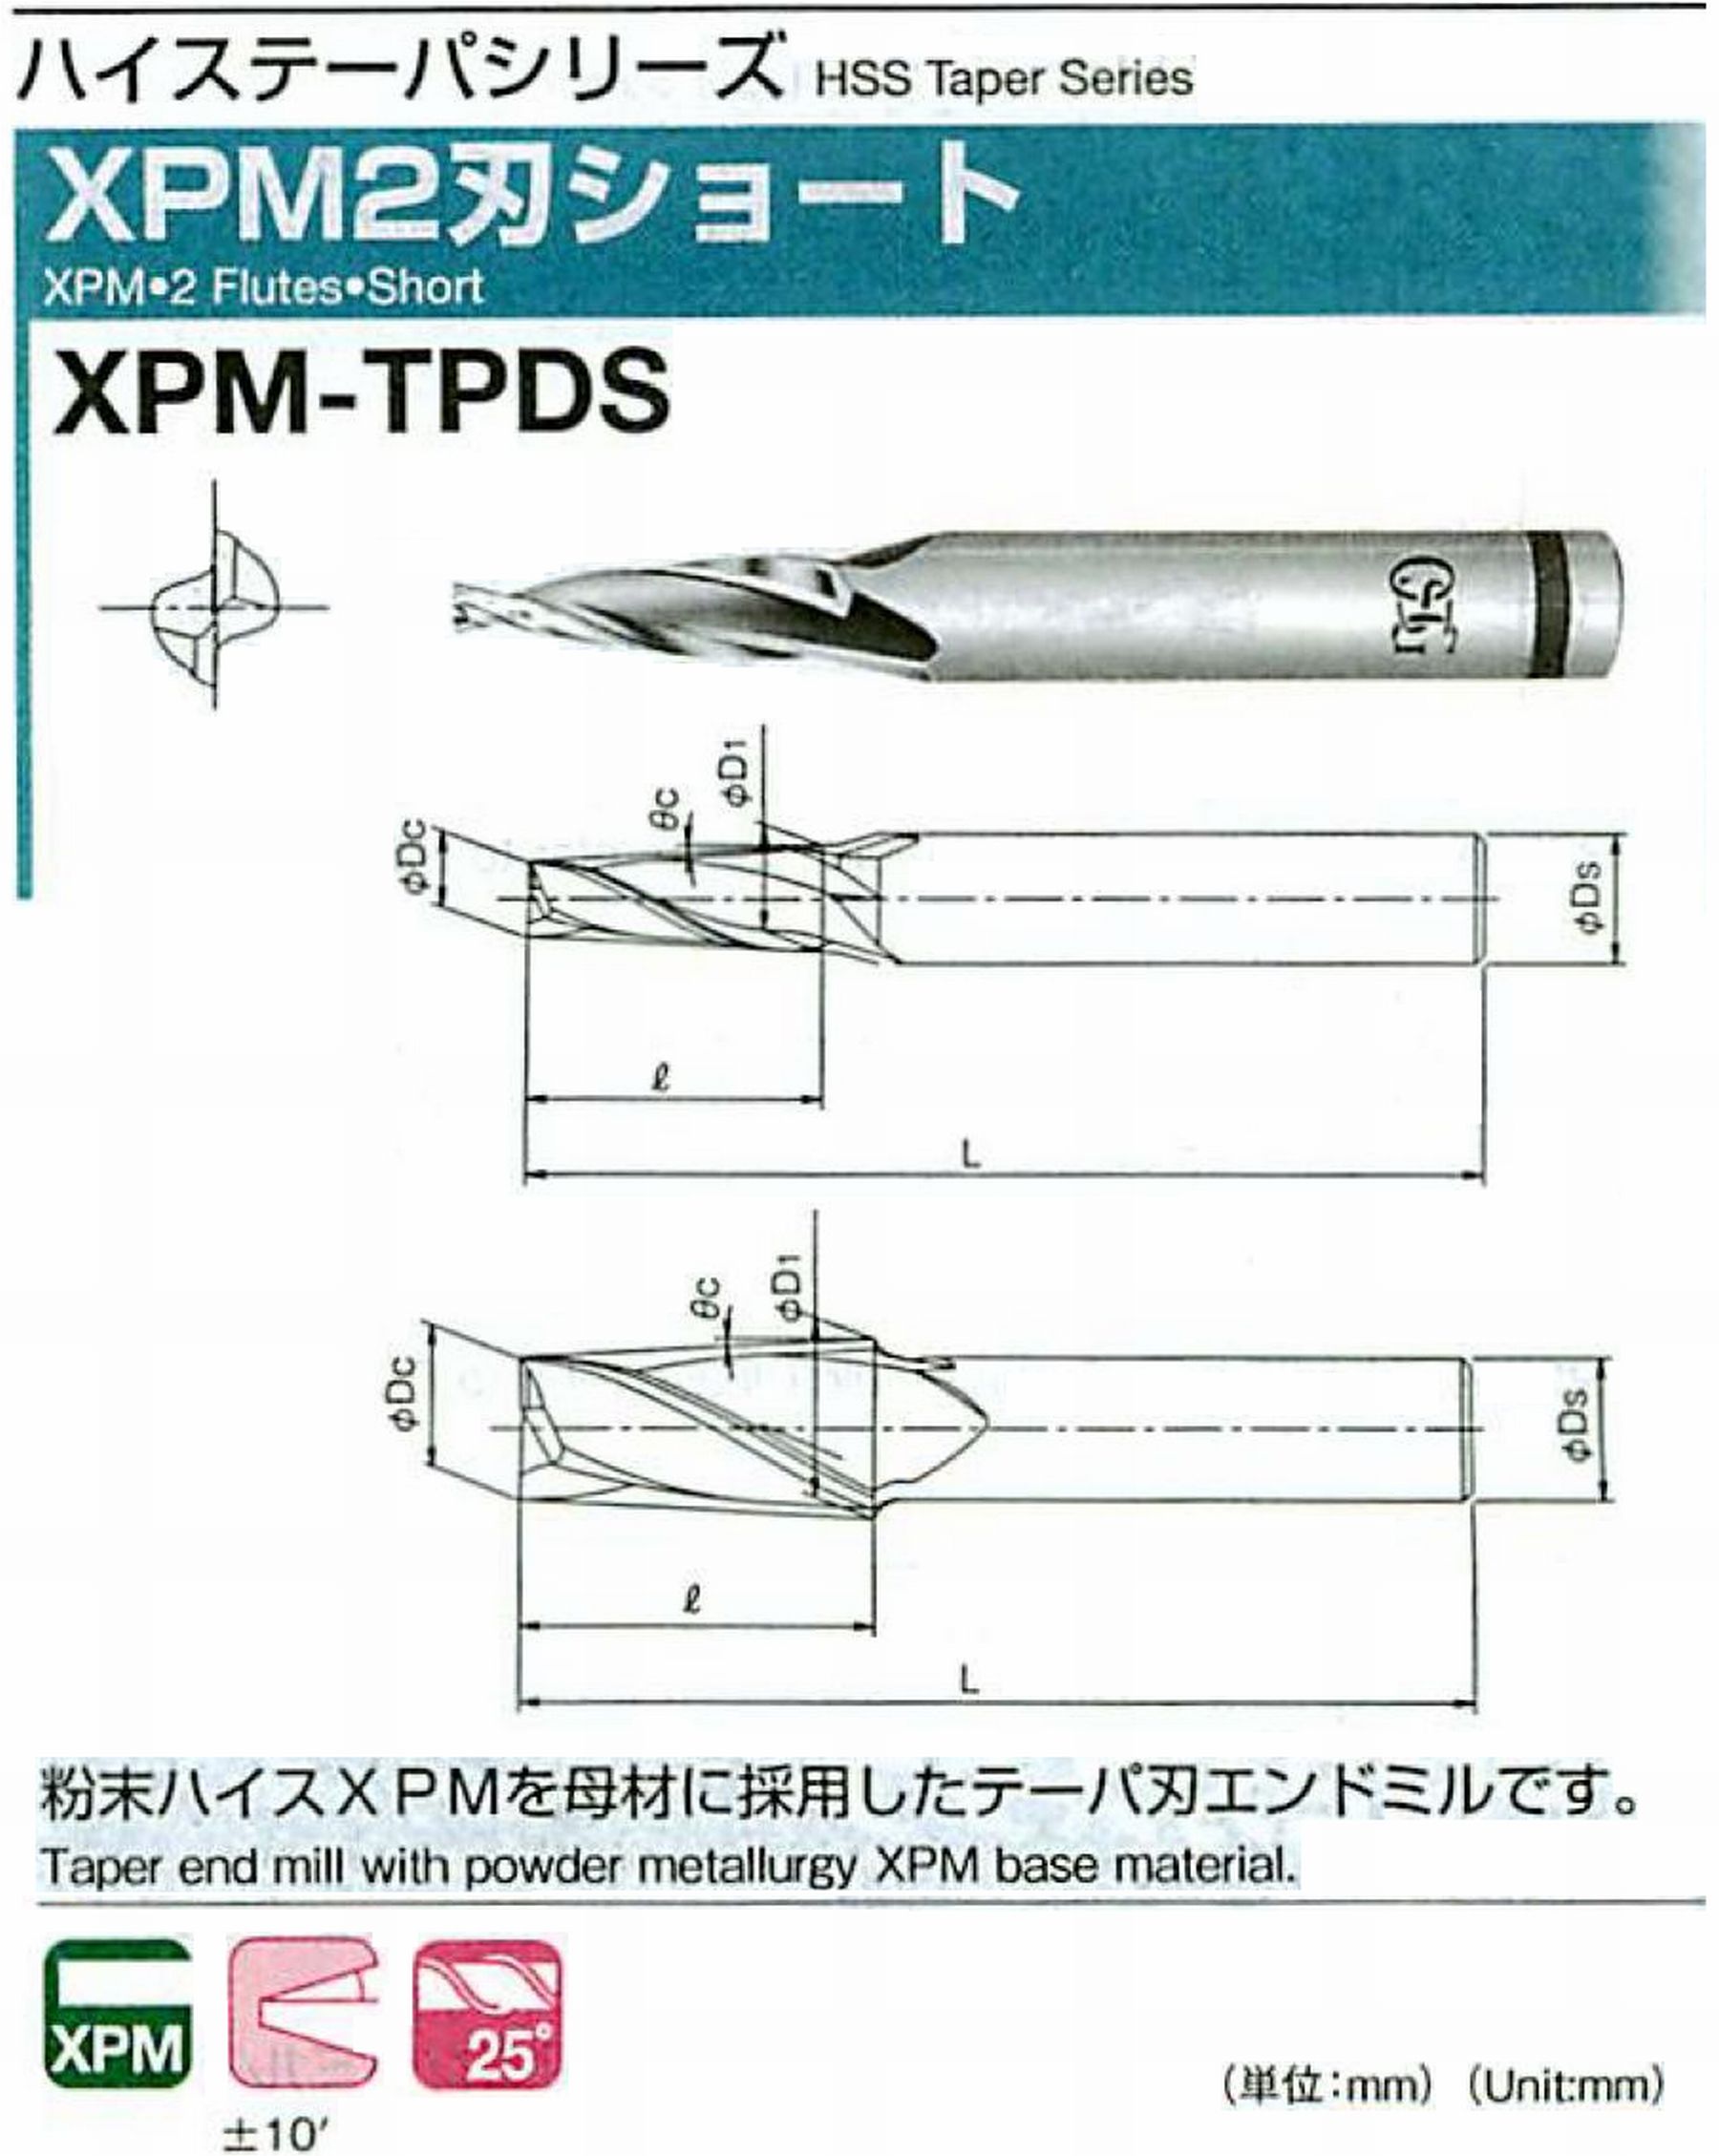 オーエスジー/OSG XPM2刃ショート XPM-TPDS 外径×刃部テーパ半角2×0.5° 全長54 刃長10 シャンク径6mm 大端径2.17